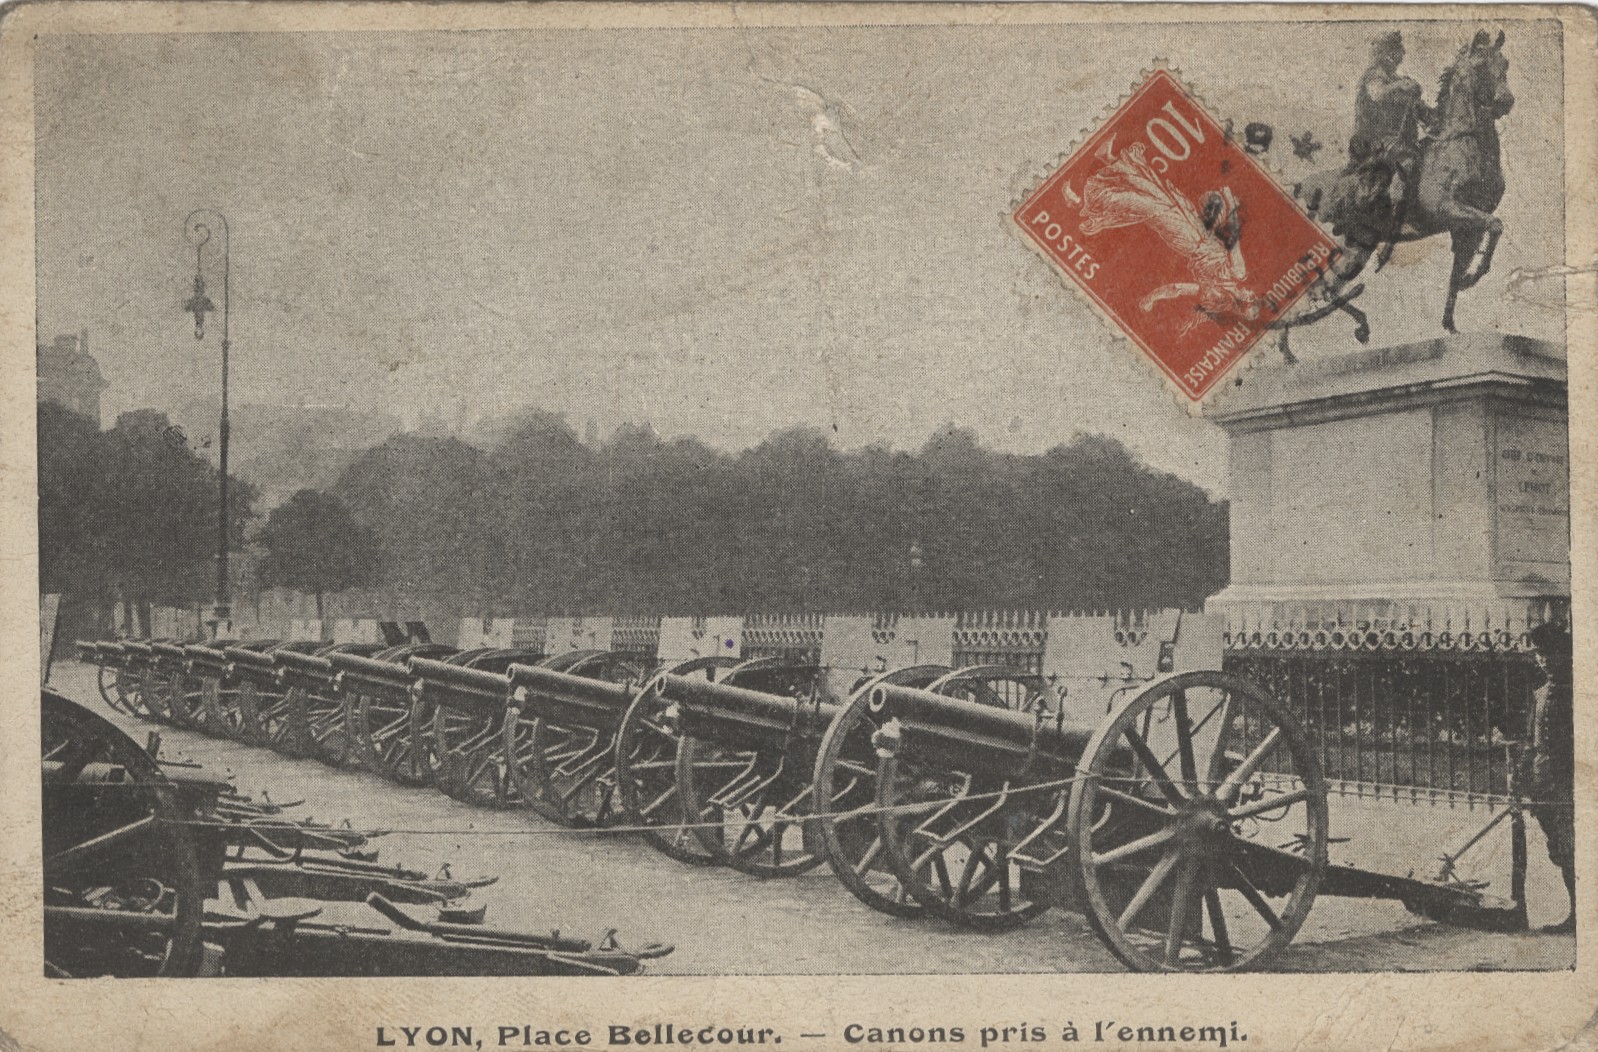 Canons pris à l'ennemi alignés place Bellecour : carte postale NB (1914-1918, cote : 4FI/4839)